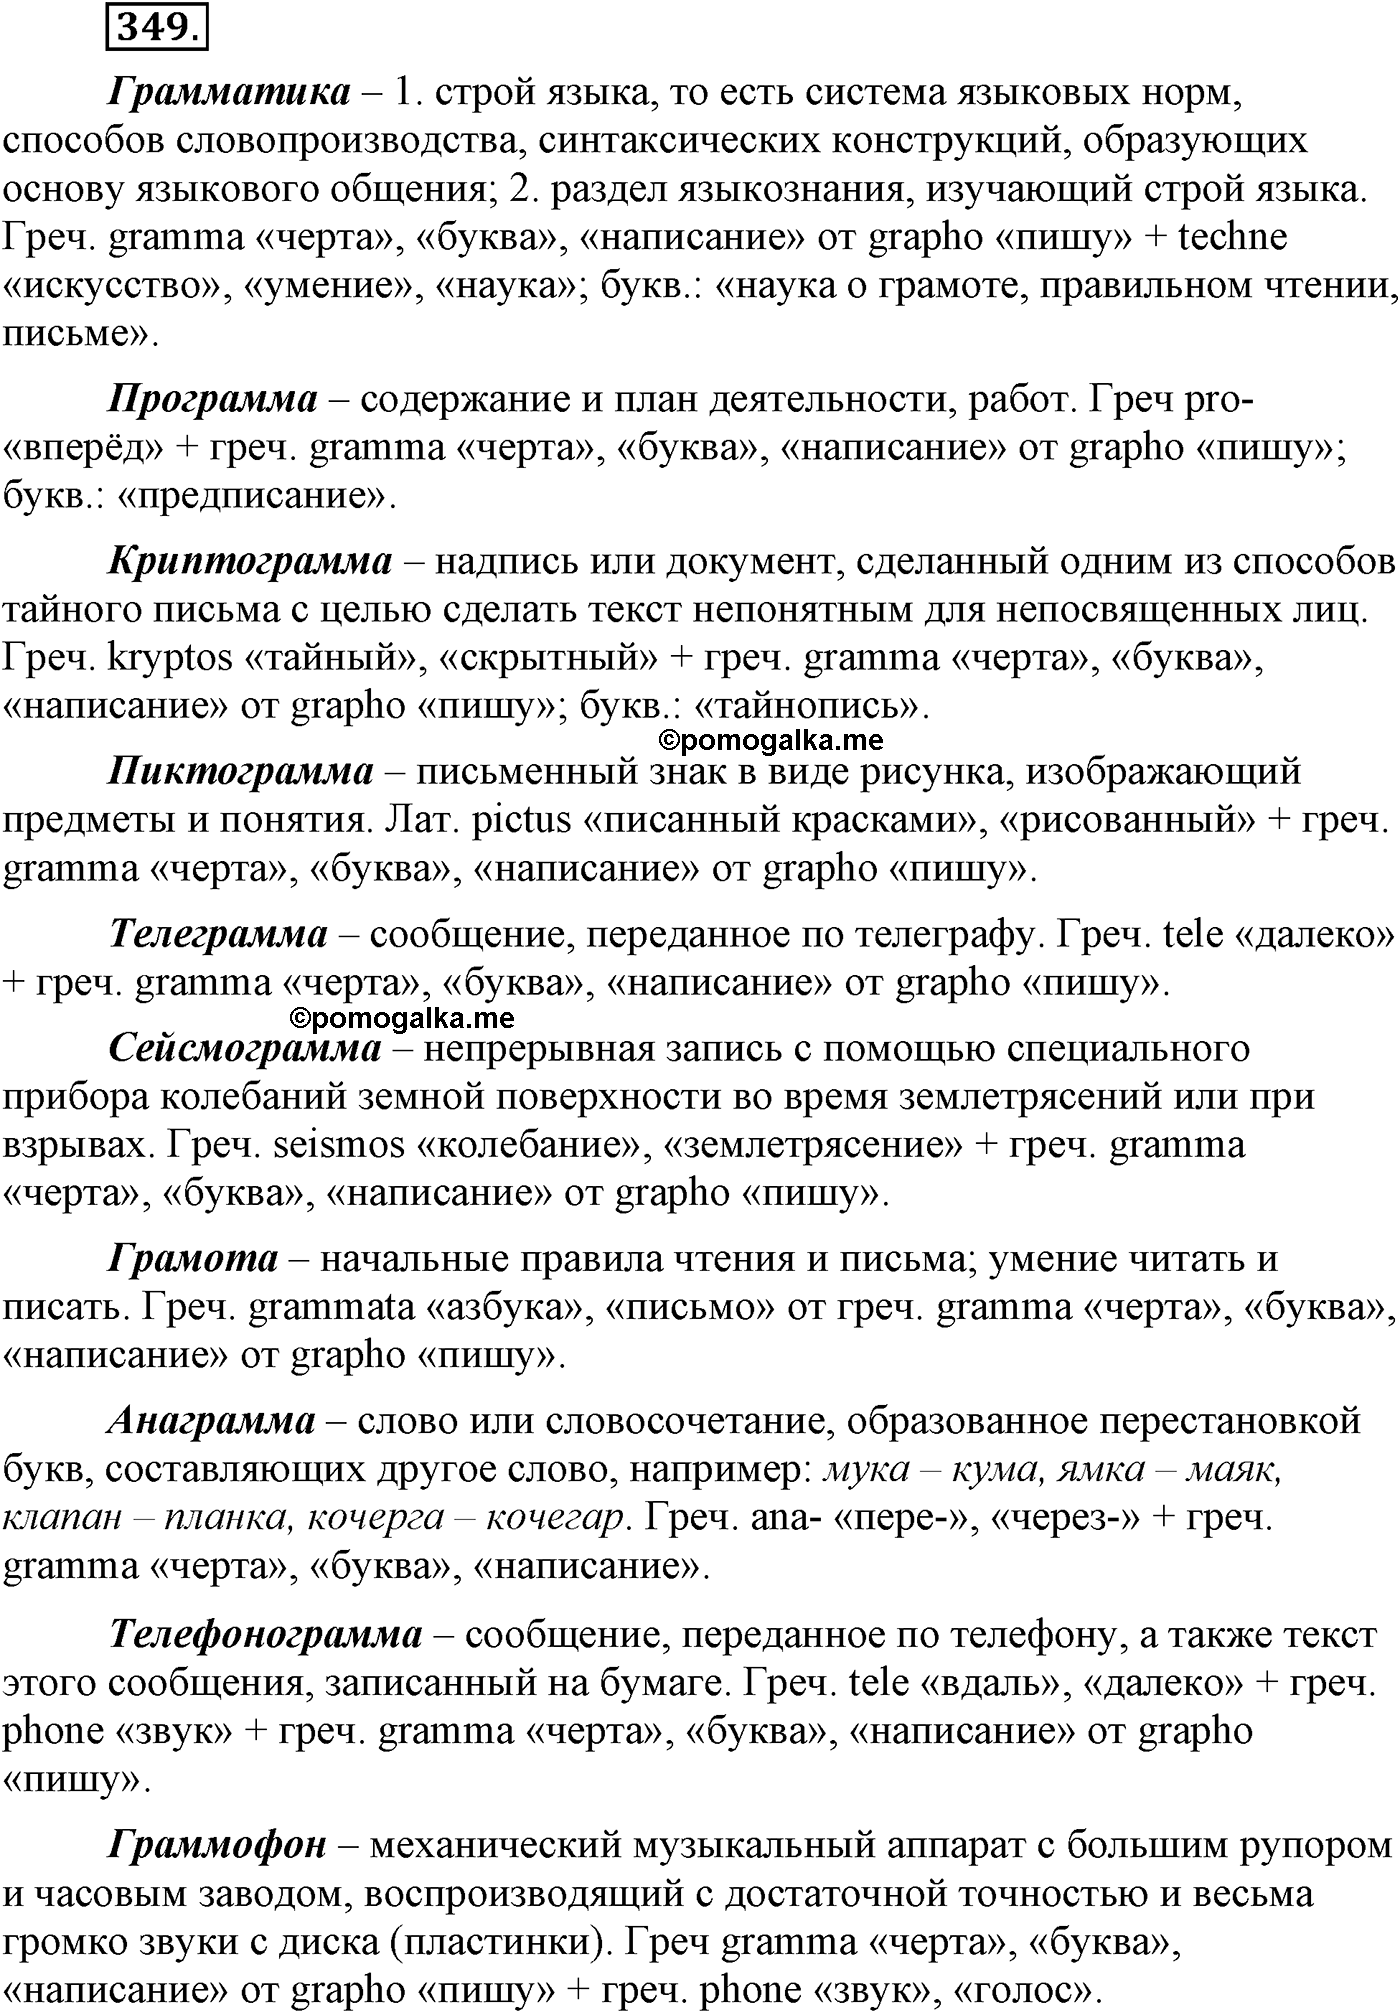 страница 187 упражнение 349 русский язык 9 класс Львова учебник 2012 год